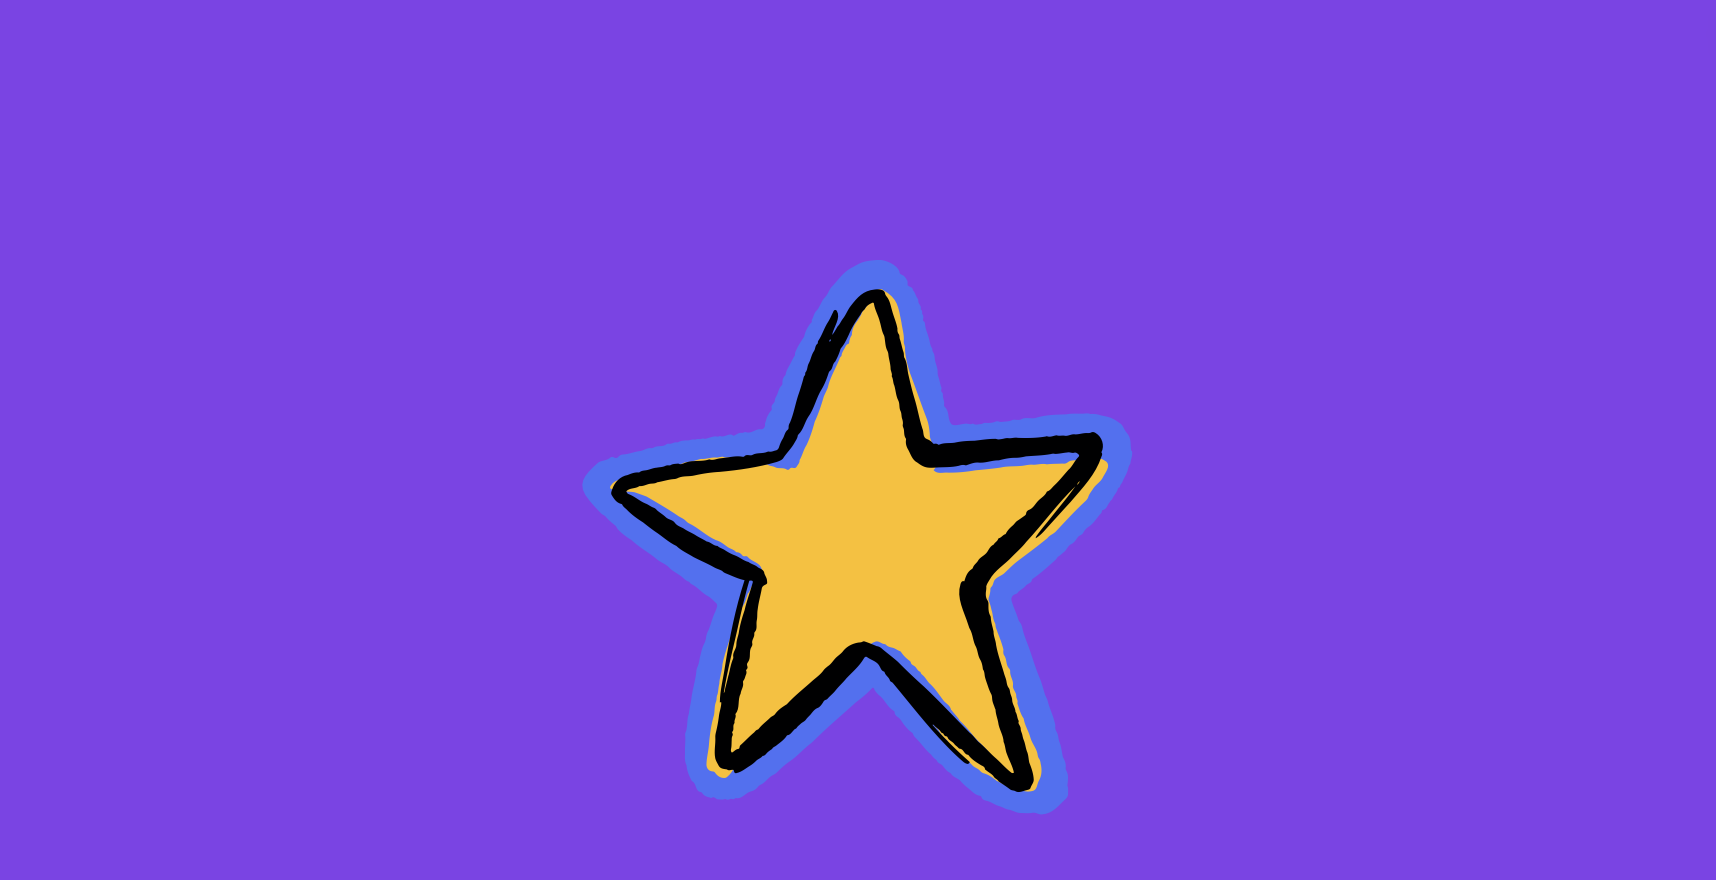 STAR Technique 